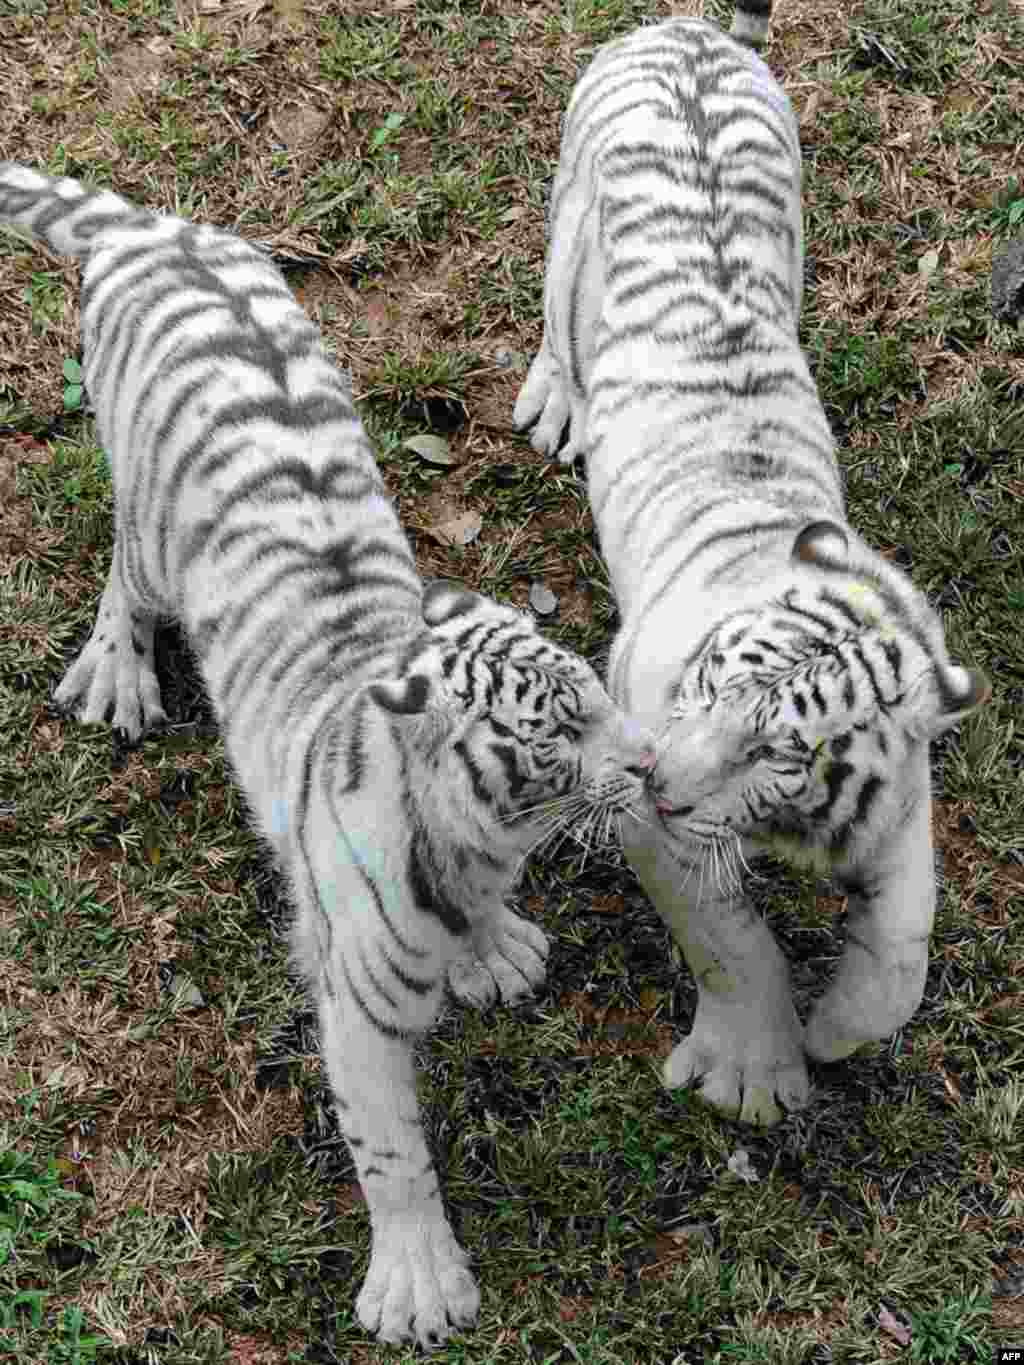 Шры Ланка, Каломба: пара белых тыграў (Panthera Tigris), якіх кітайскі ўрад падараваў з нагоды новага (2010) Году тыгра сталічнаму заапарку як знак дружбы паміж краінамі.